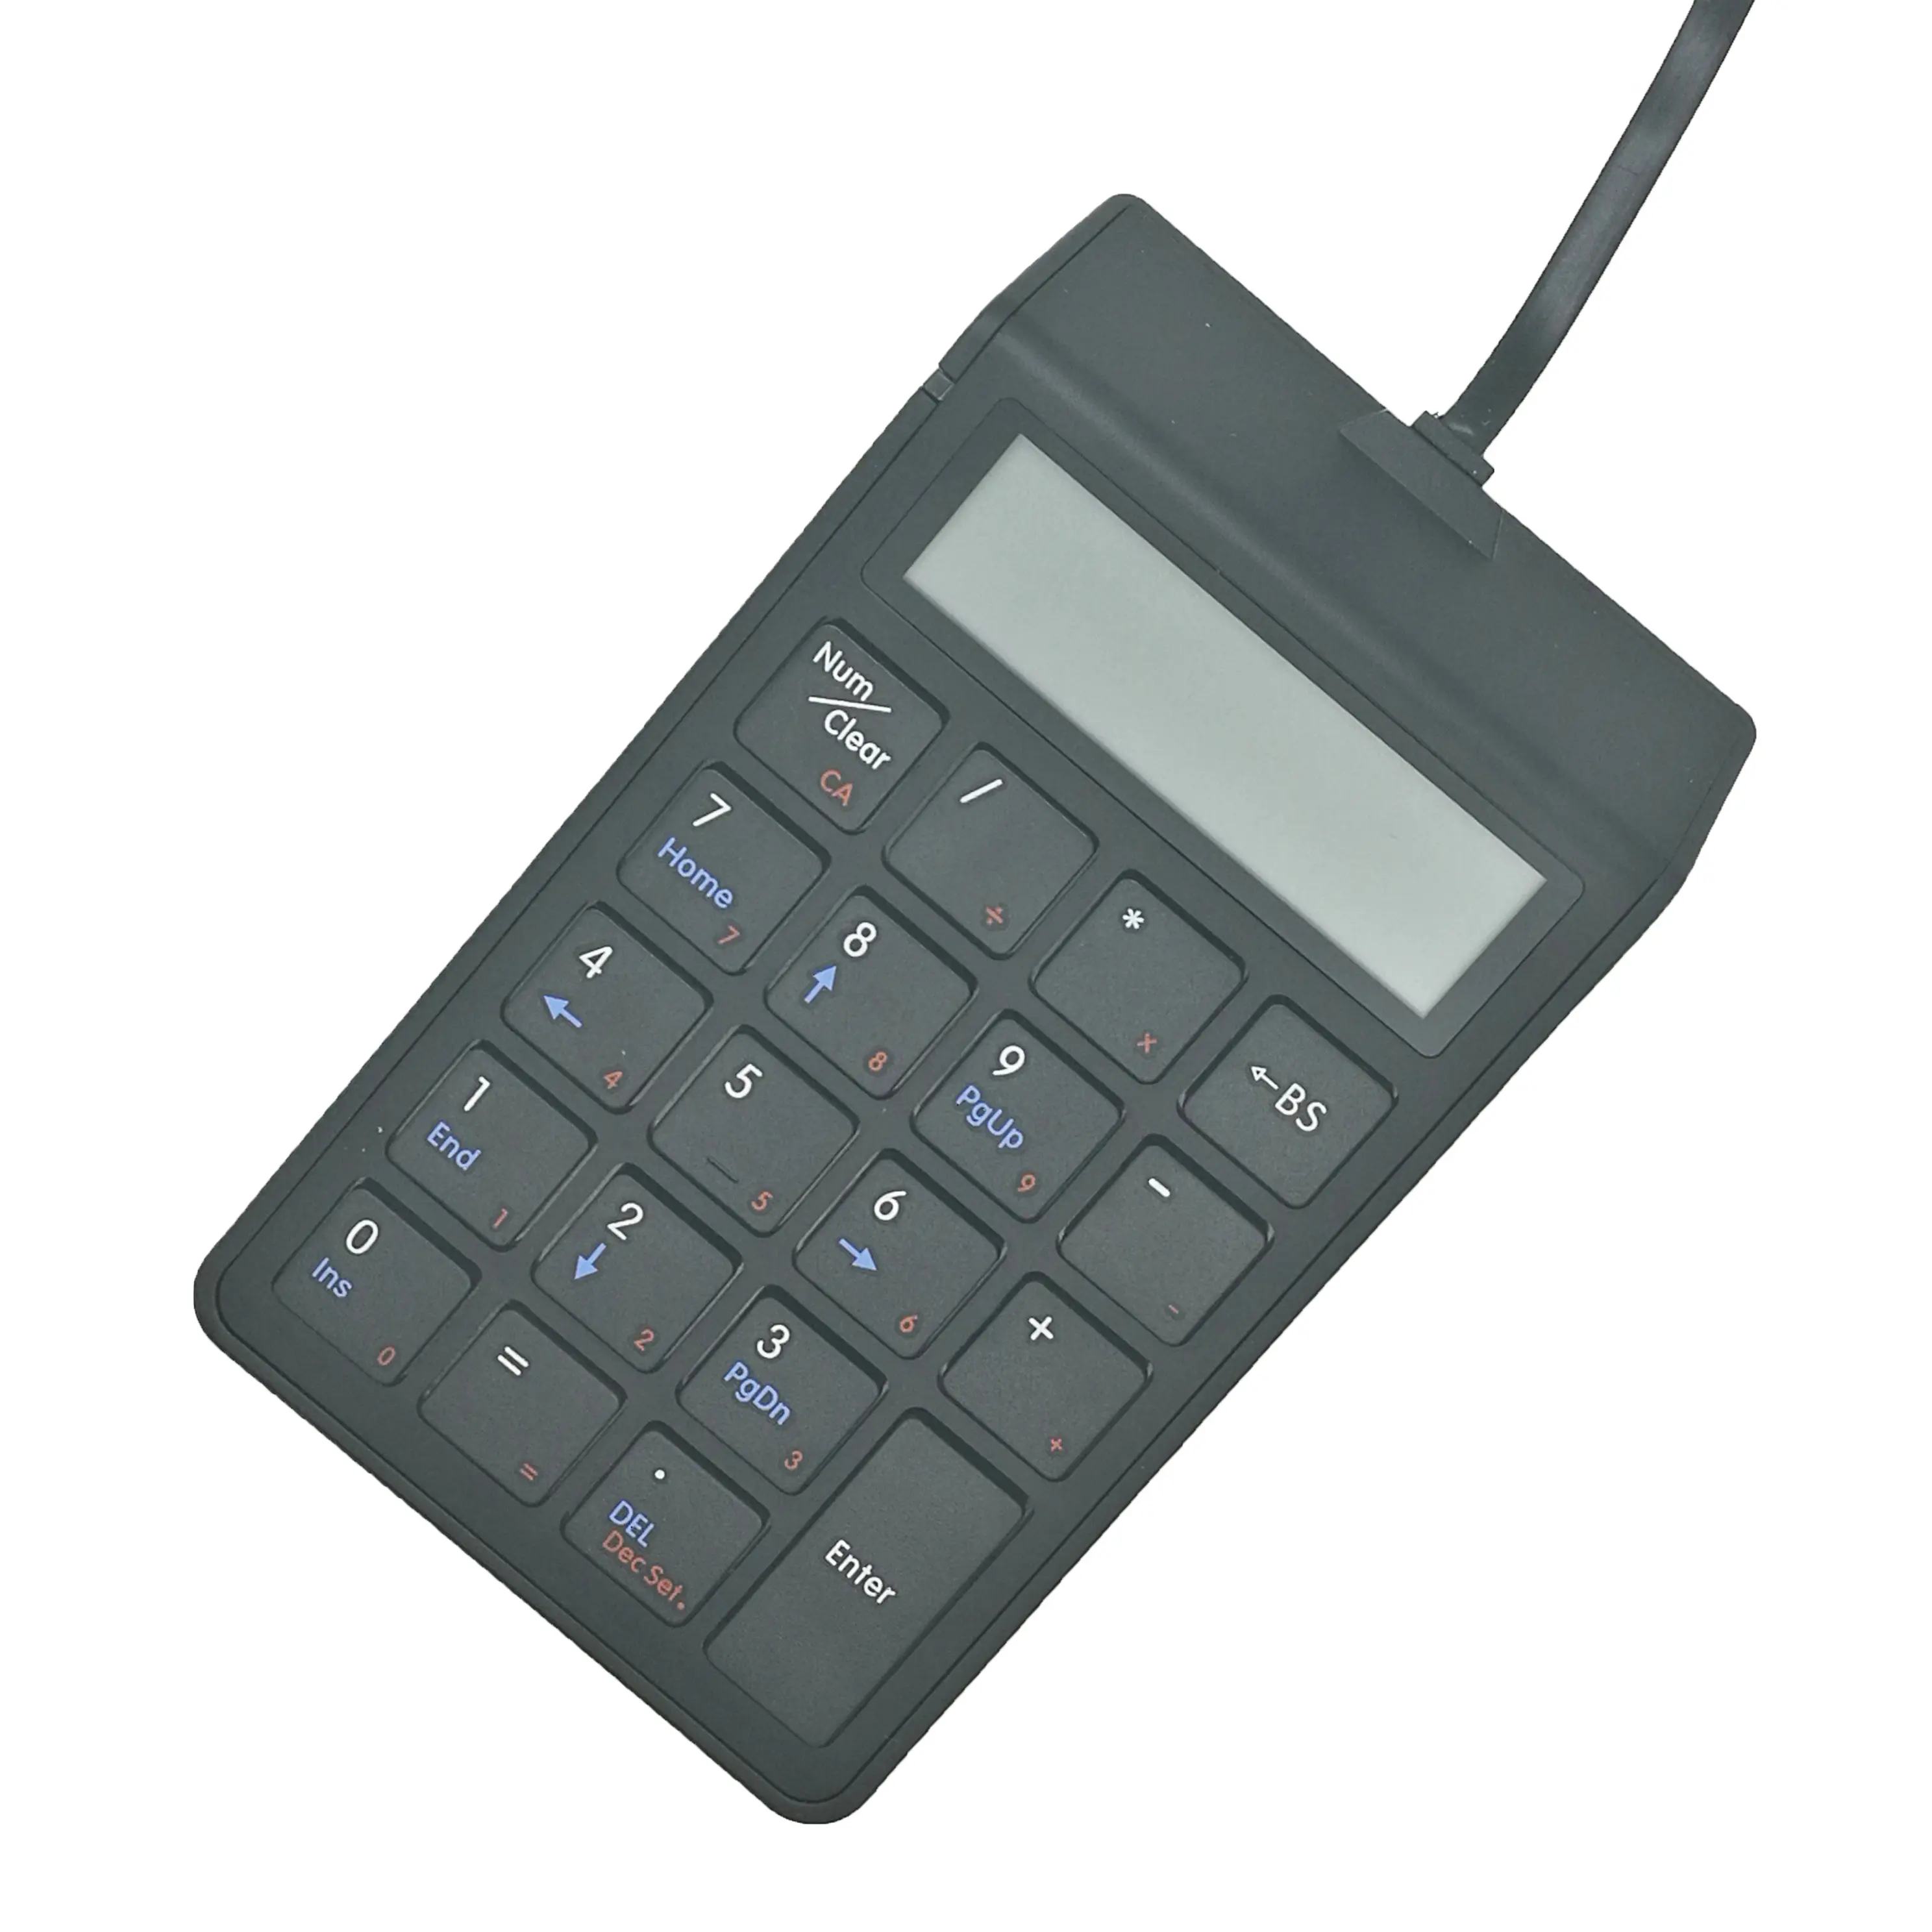 Mini numériseur filaire compact personnalisé à LED, clavier numérique à 19 touches, calculatrice comptable, clavier de terminal de point de vente